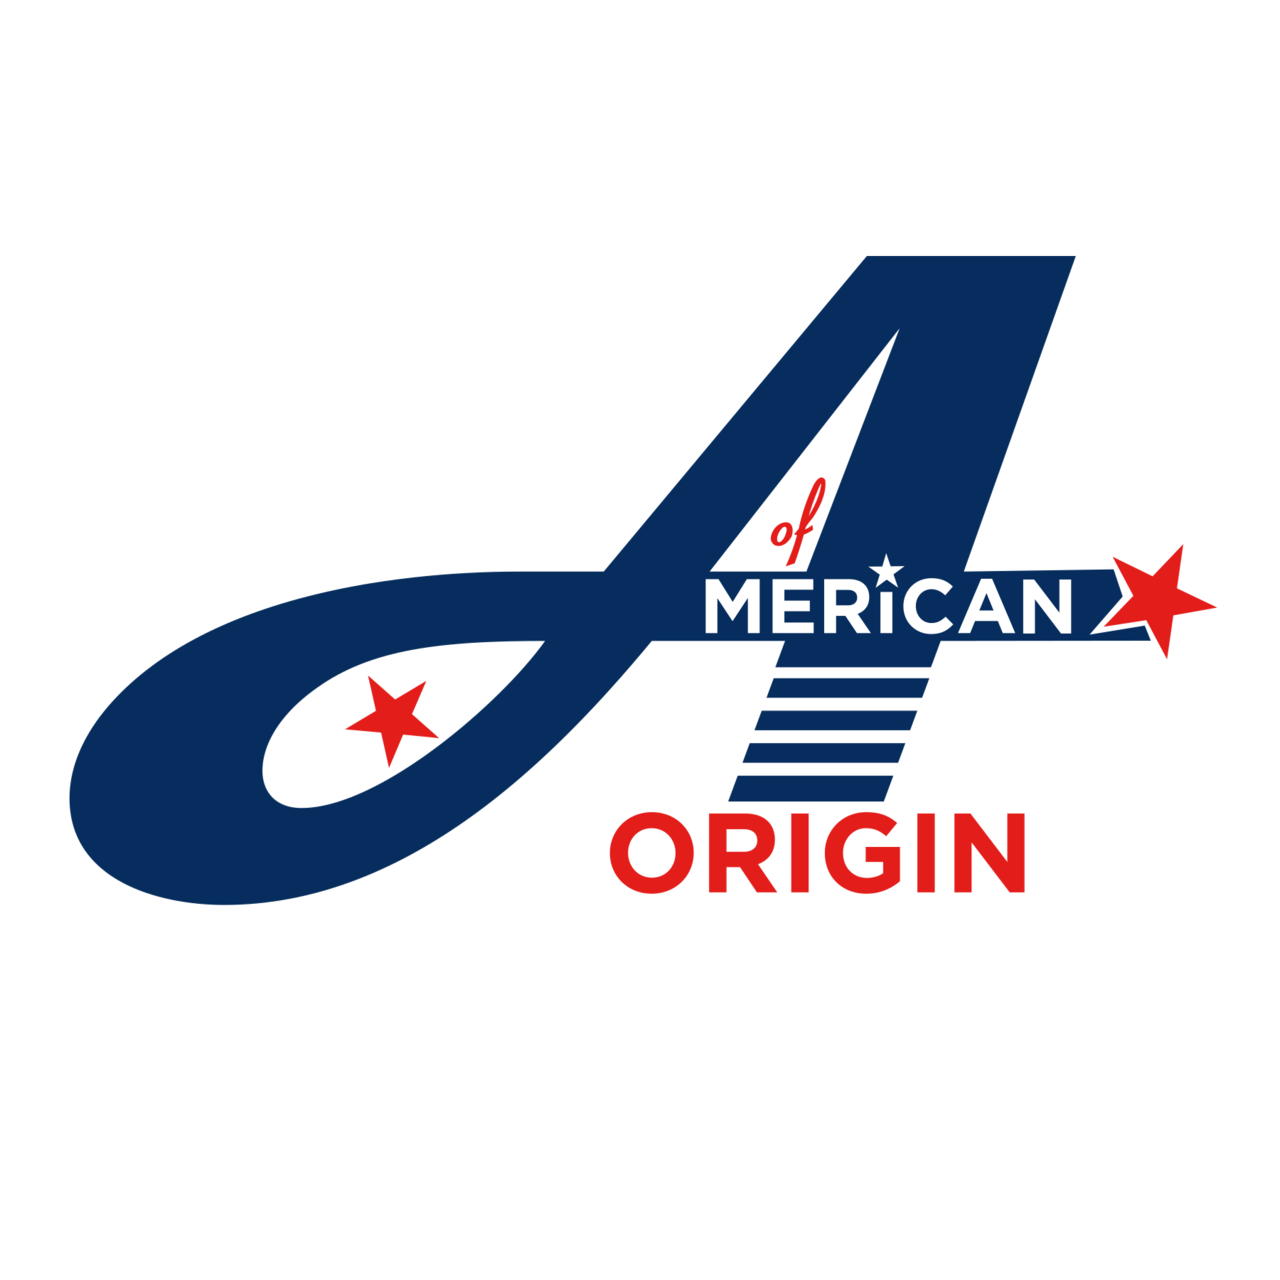 Of American Origin